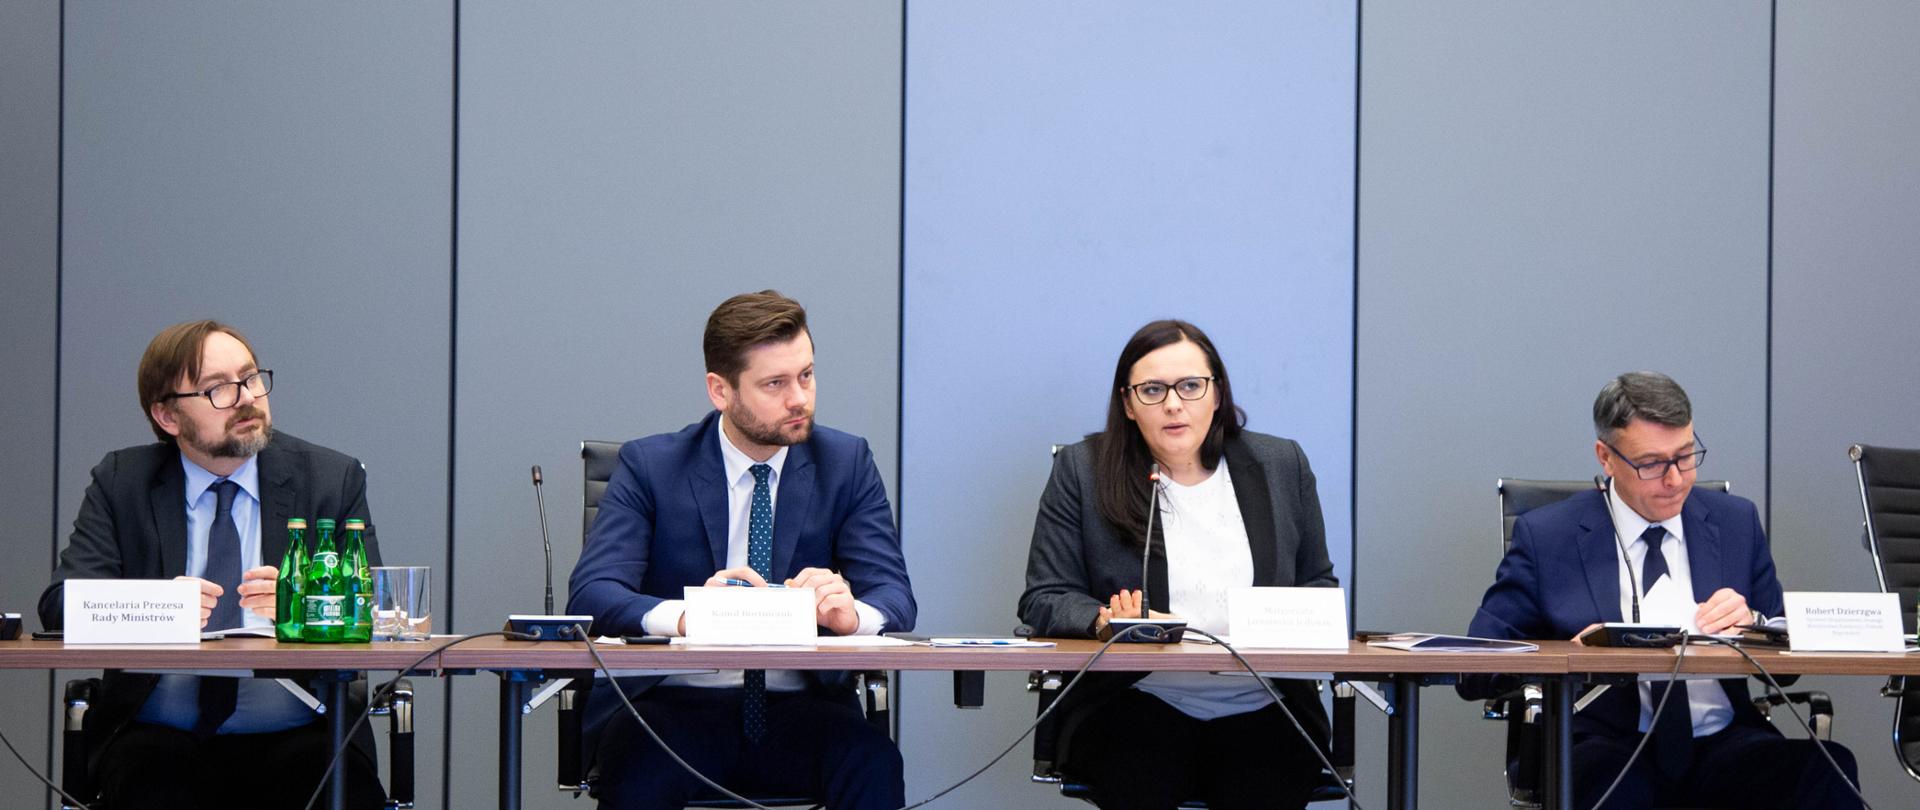 przy stole siedzą paneliści, wśród nich minister Małgorzata Jarosińska-Jedynak, która mówi do mikrofonu i wiceminister Kamil Bortniczuk